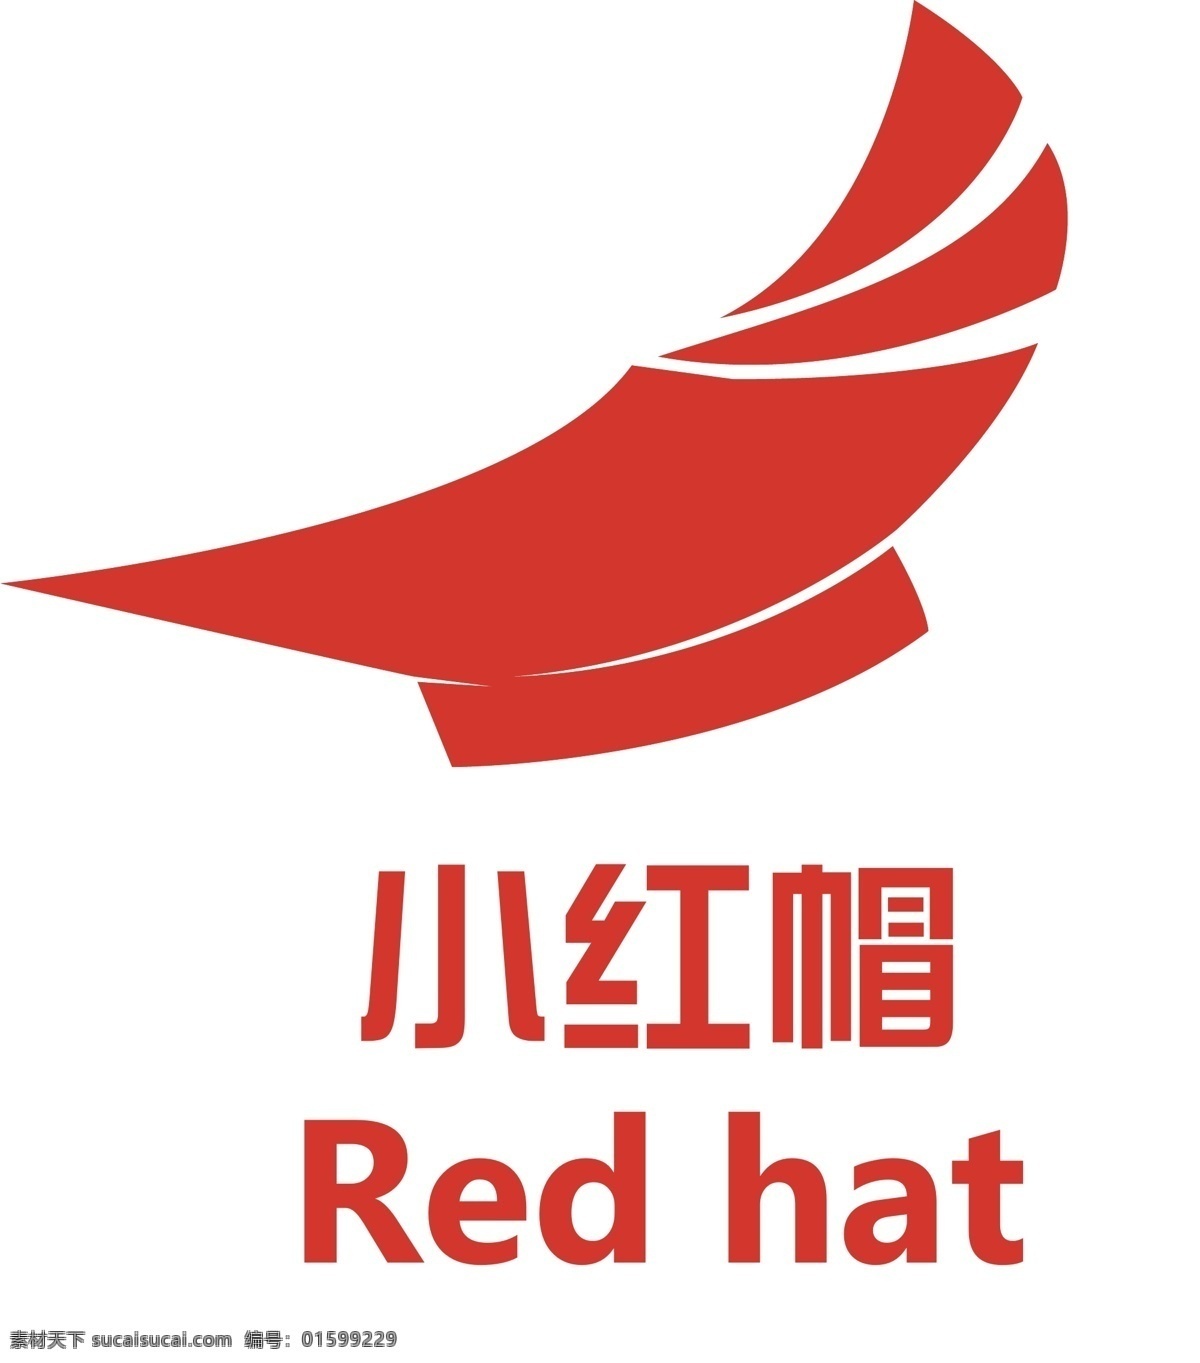 小红帽 logo 教育 培训 文化